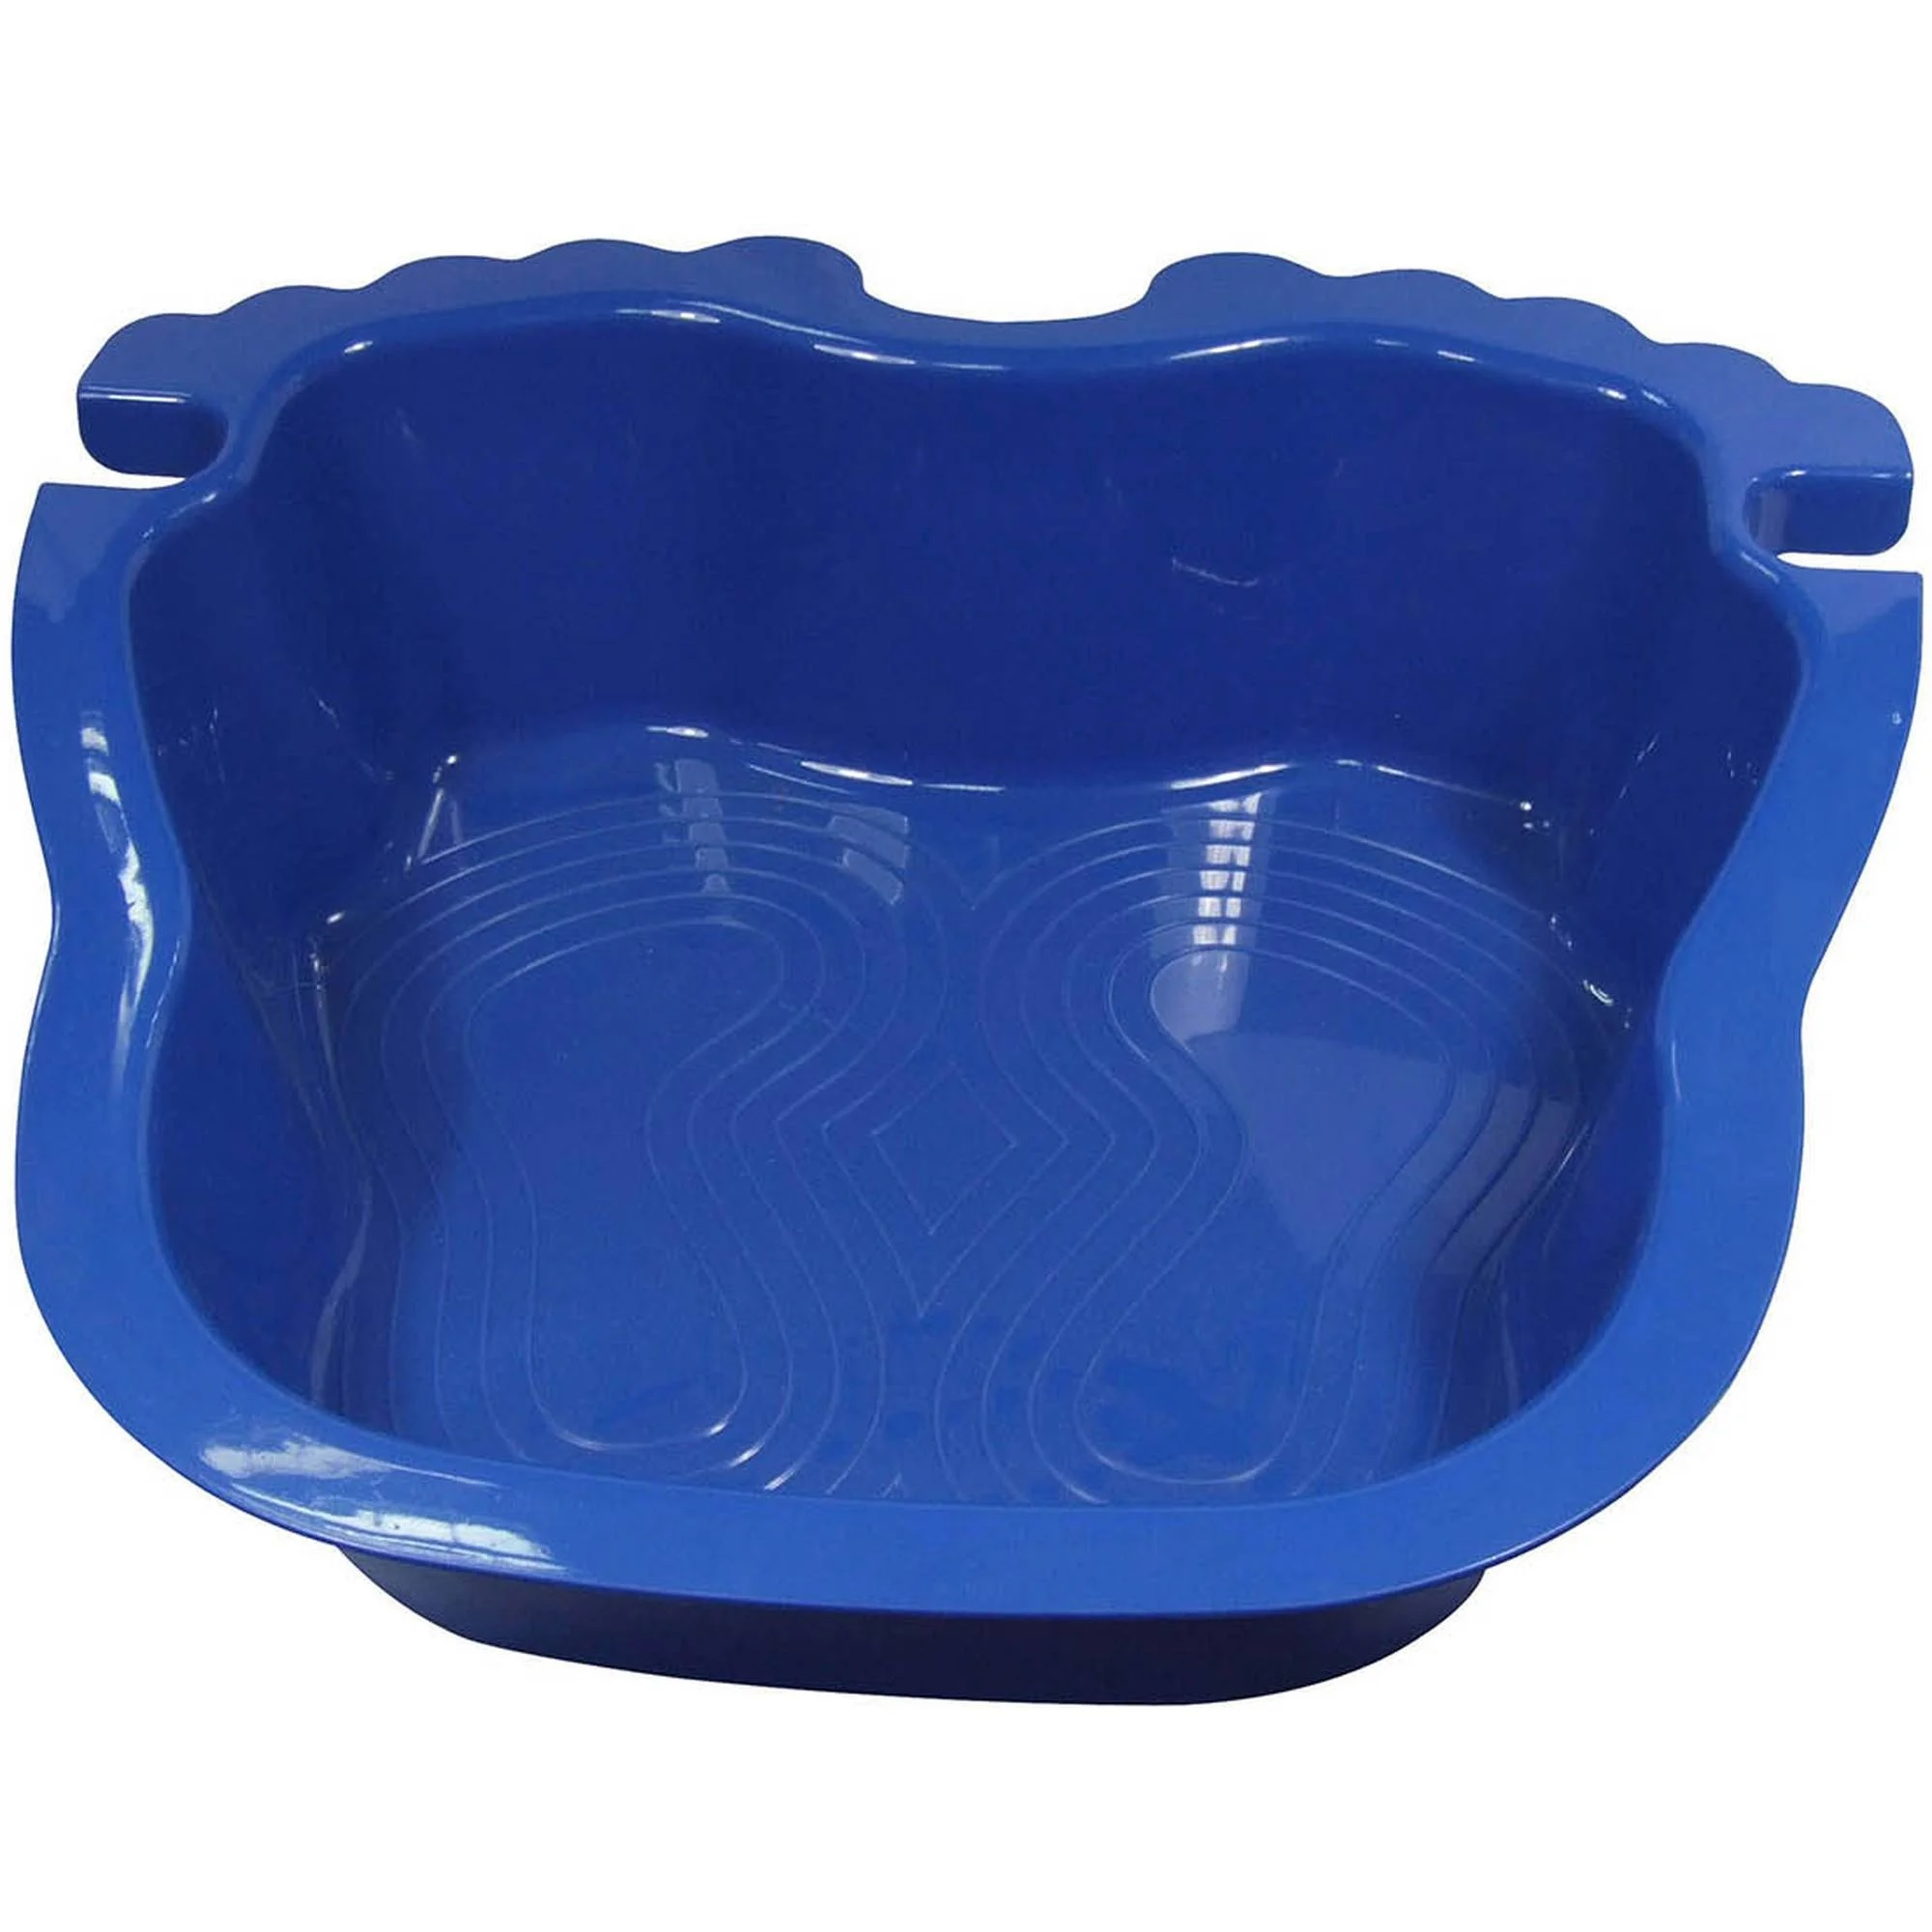 Fußwanne blau, für Pool und Whirlpool + product picture